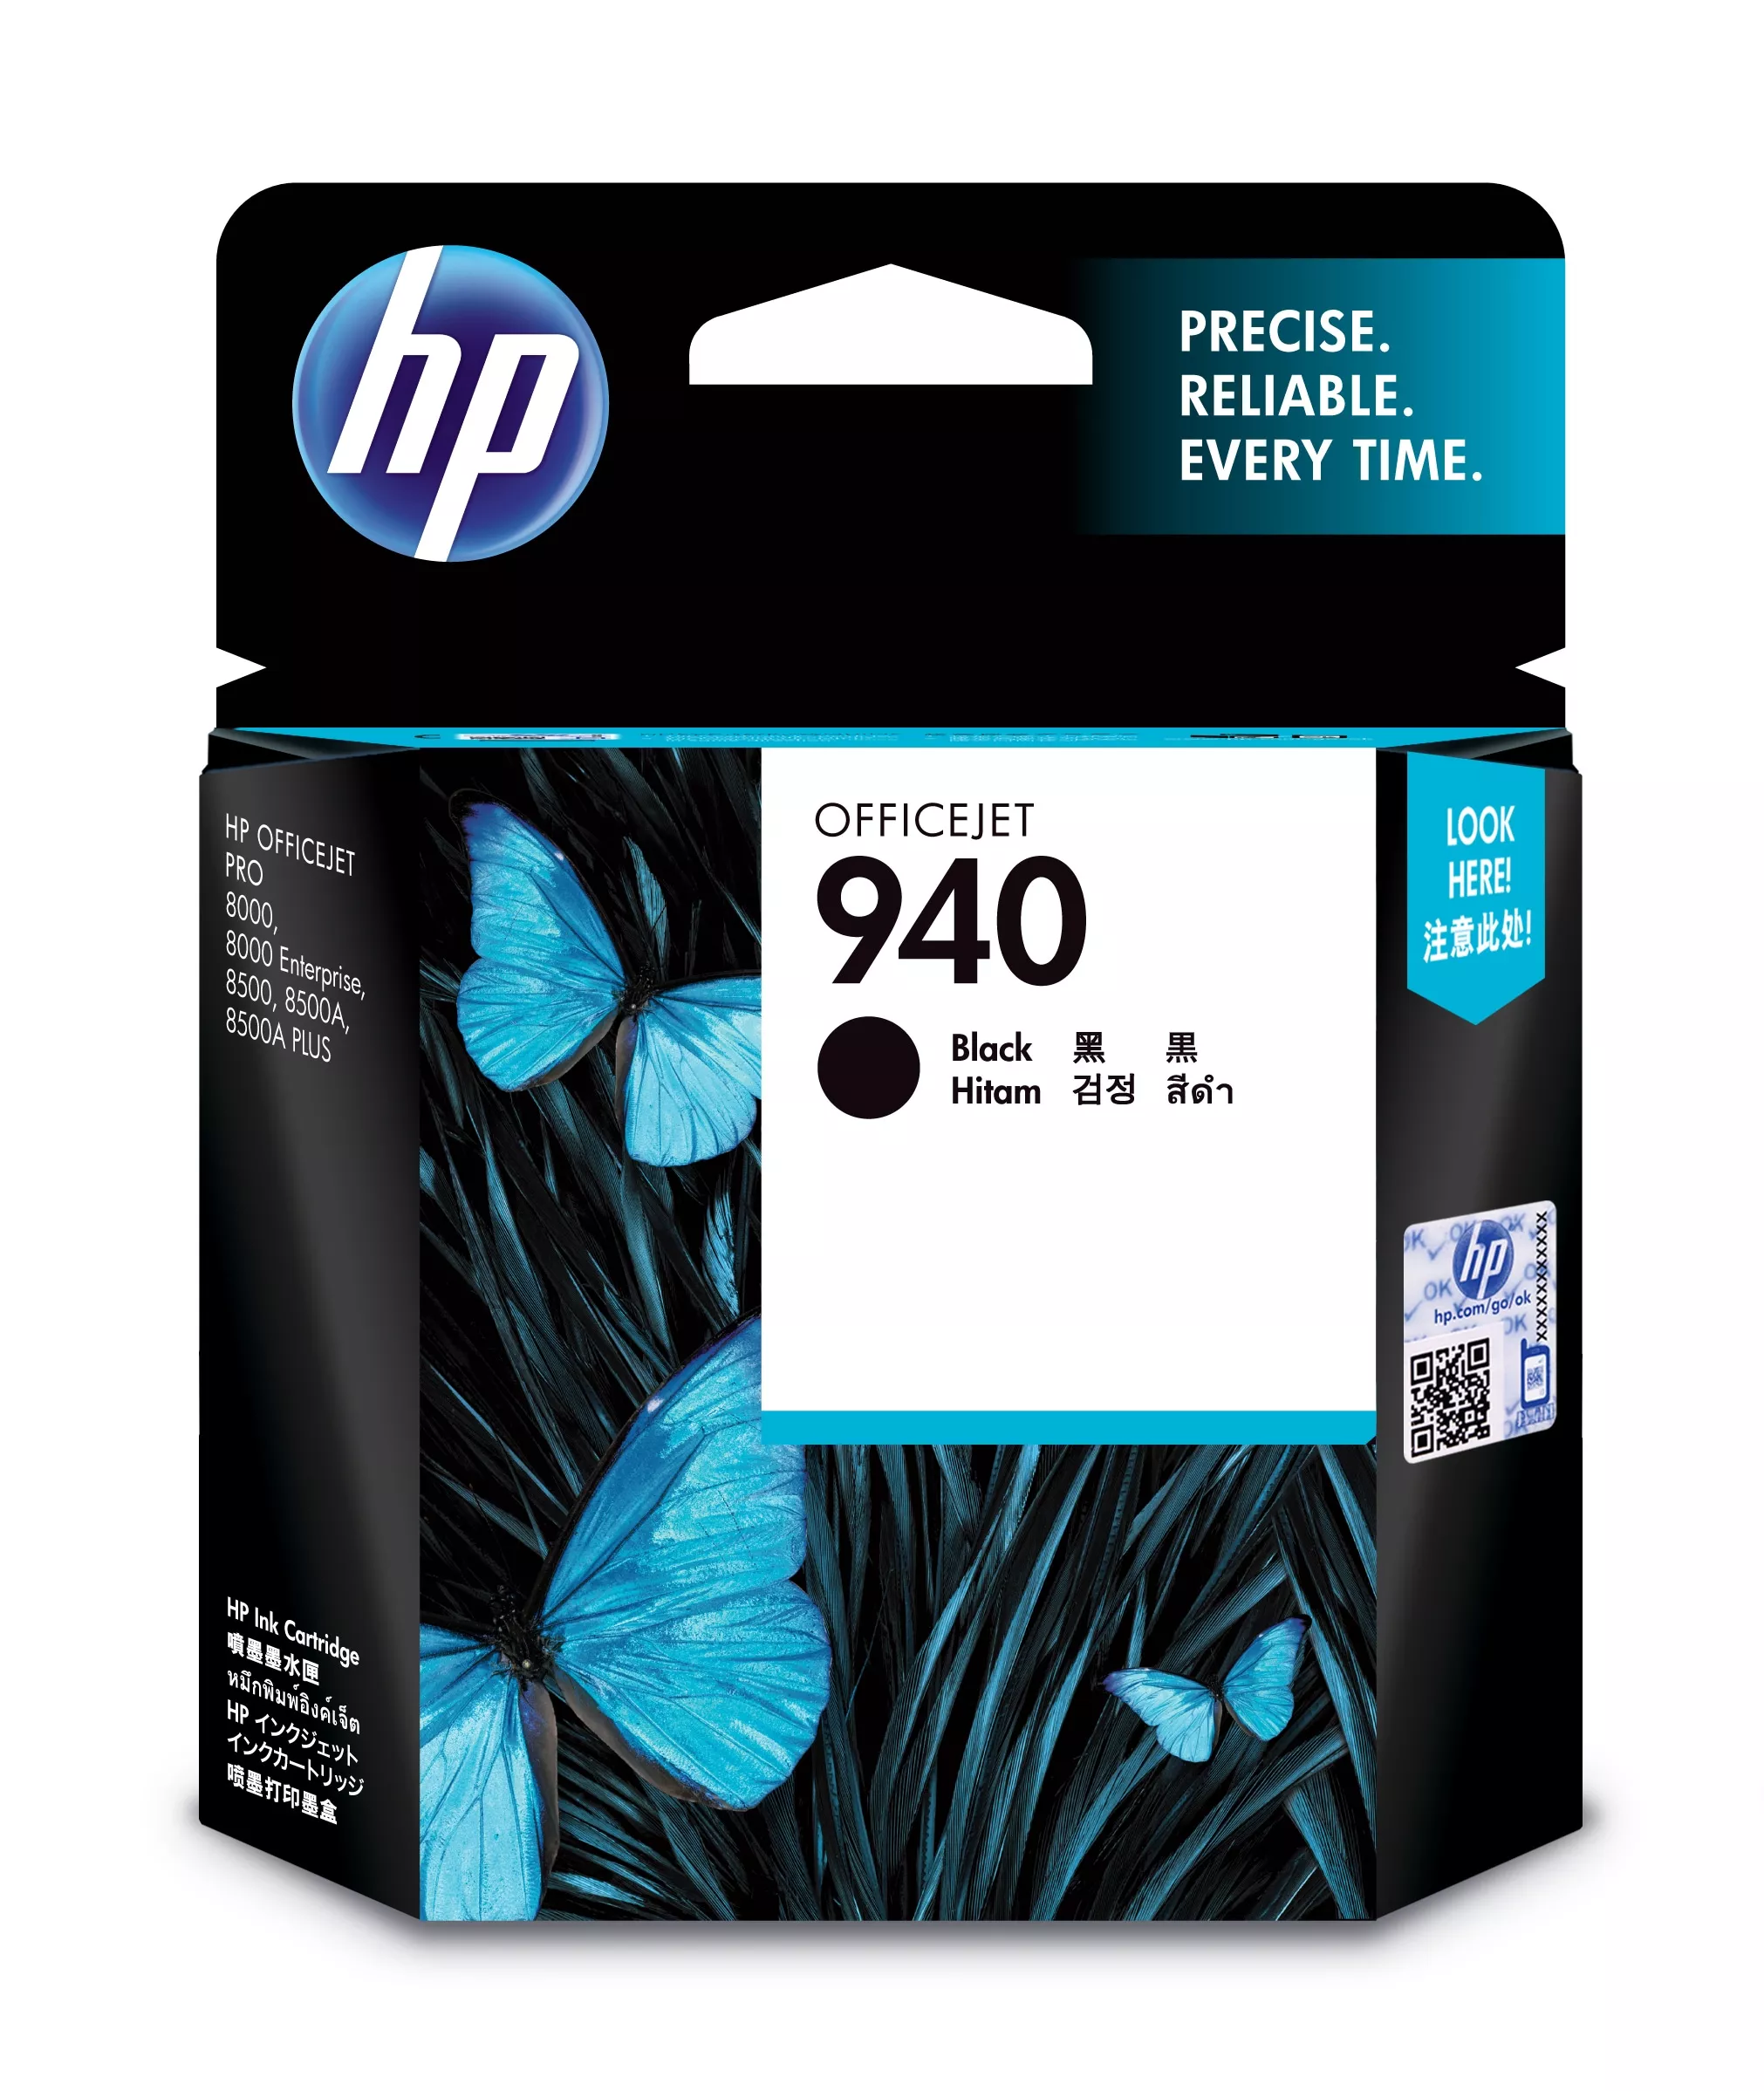 Vente HP 940 Noir Blister - cartouche périmée 2018 HP au meilleur prix - visuel 2